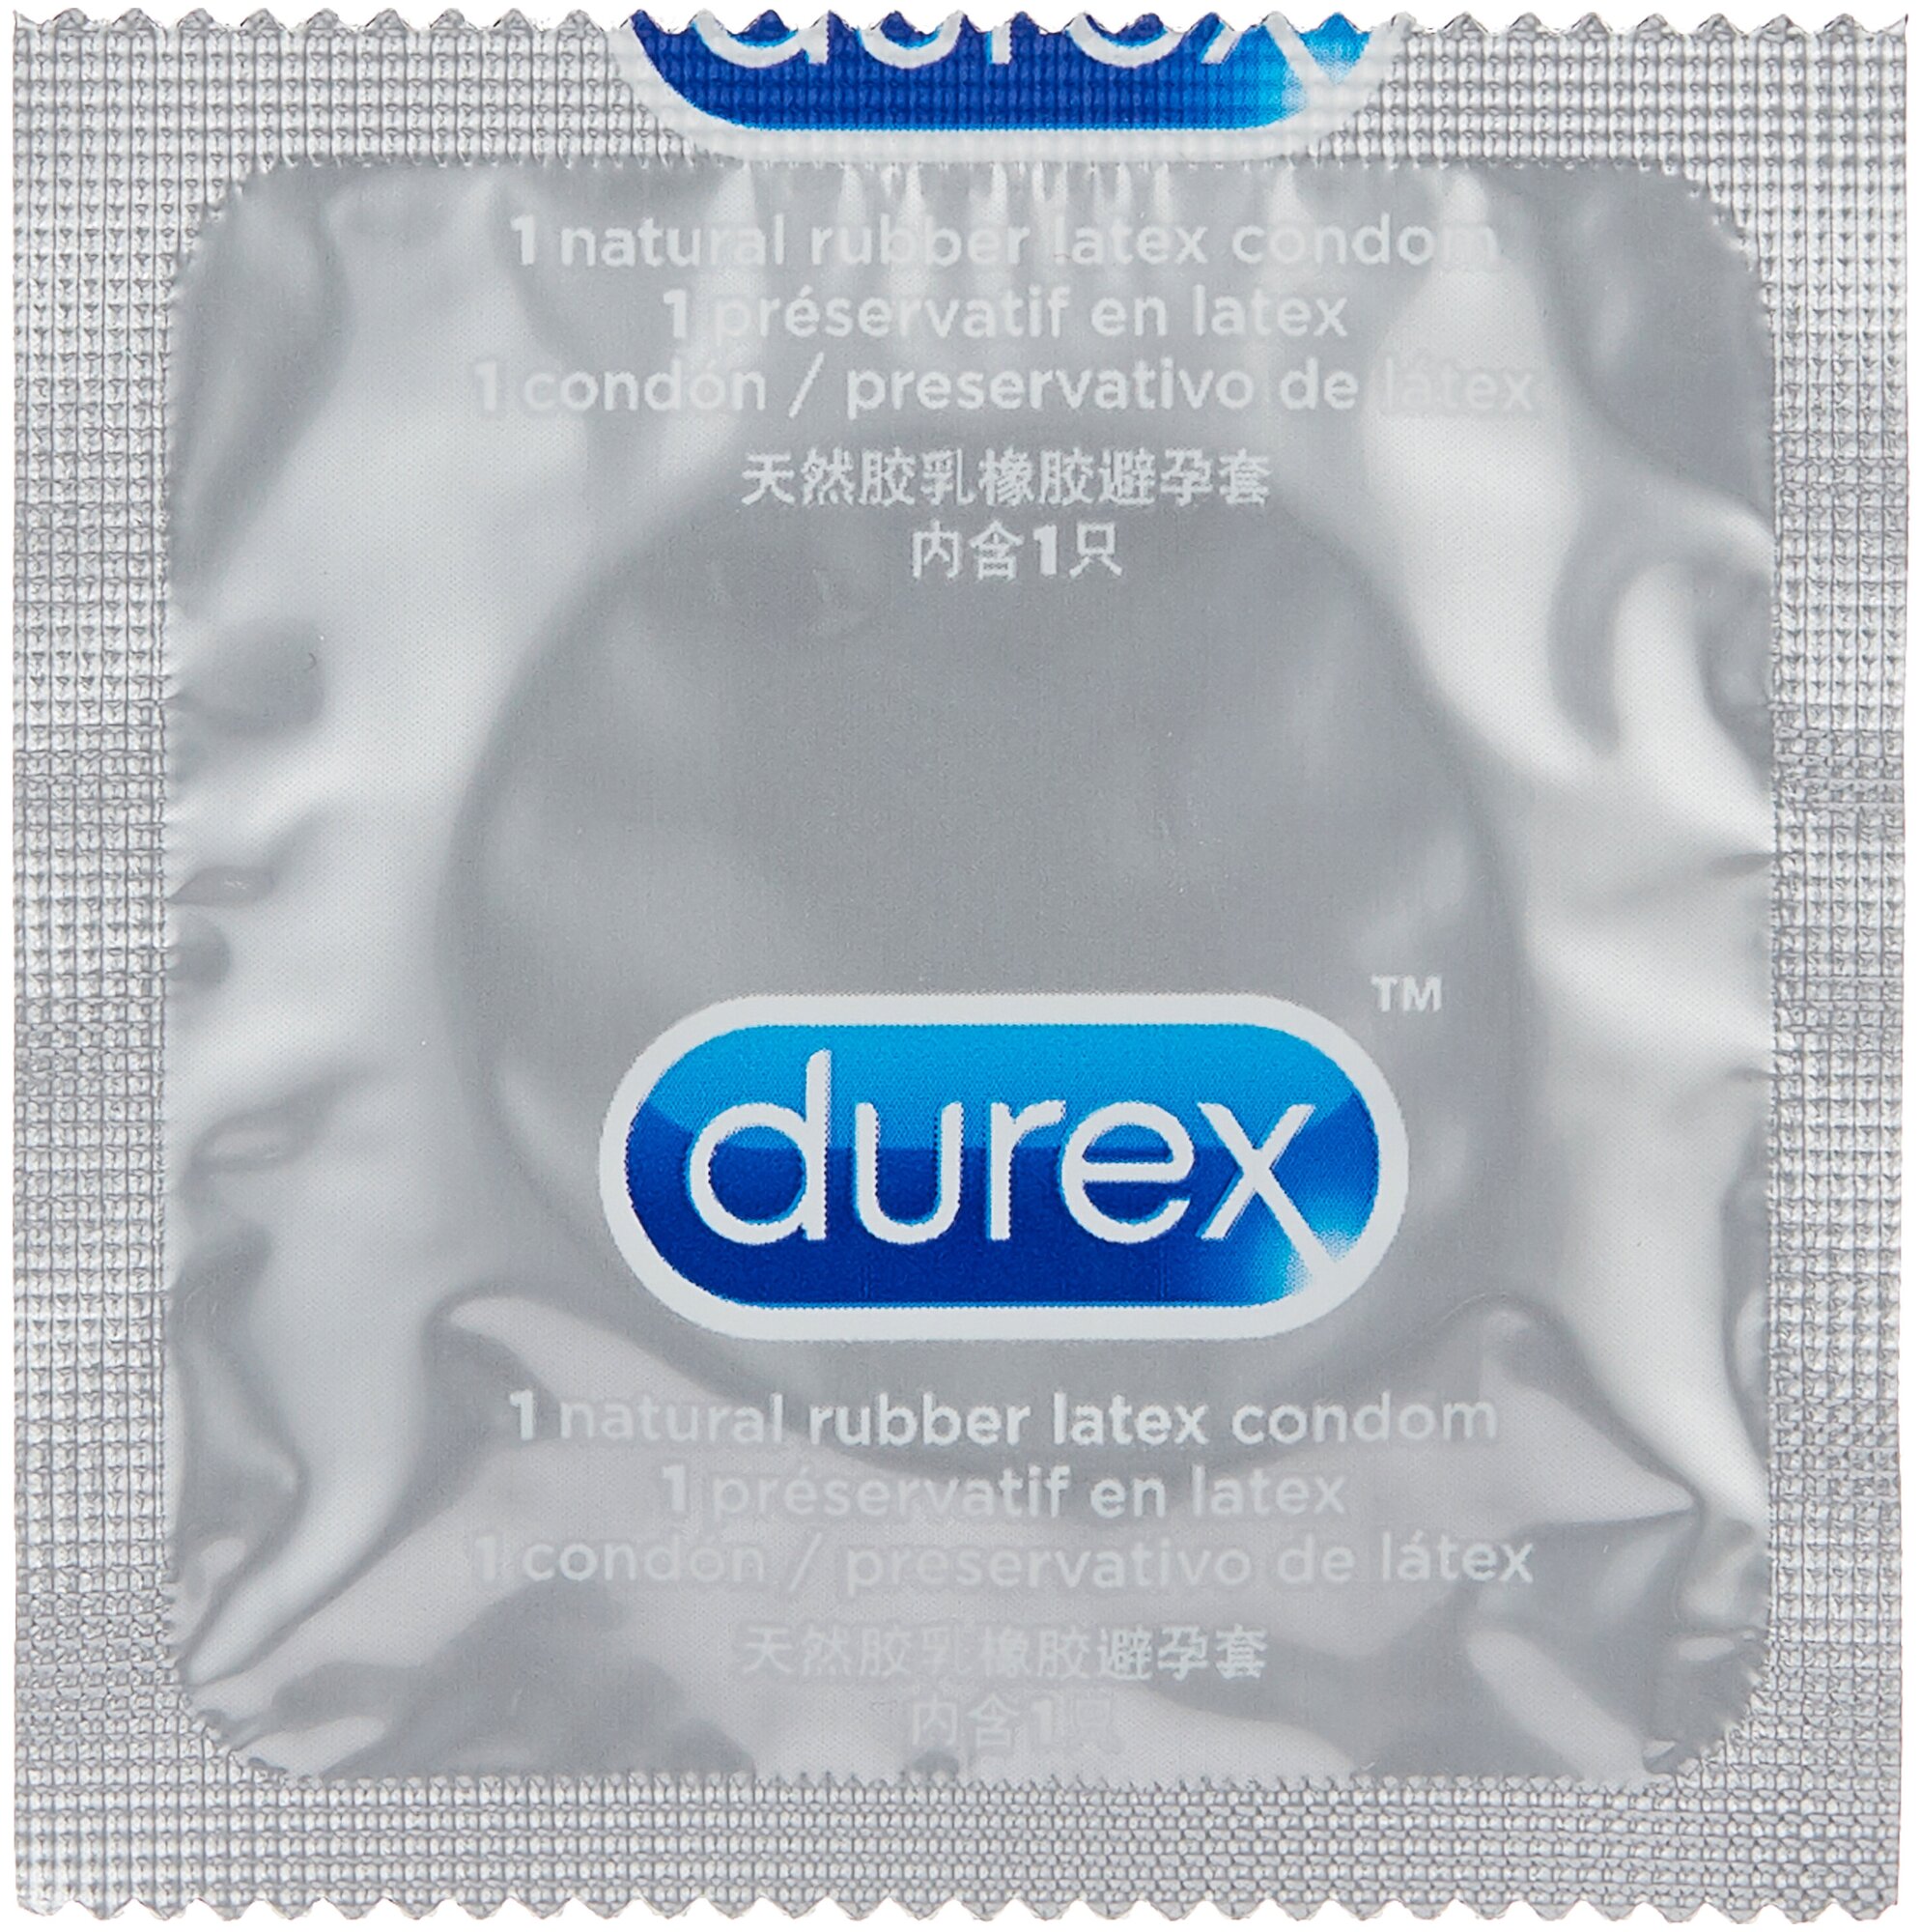 Презервативы Durex (Дюрекс) Invisible ультратонкие 12 шт. doodle Рекитт Бенкизер Хелскэр (ЮК) Лтд - фото №2